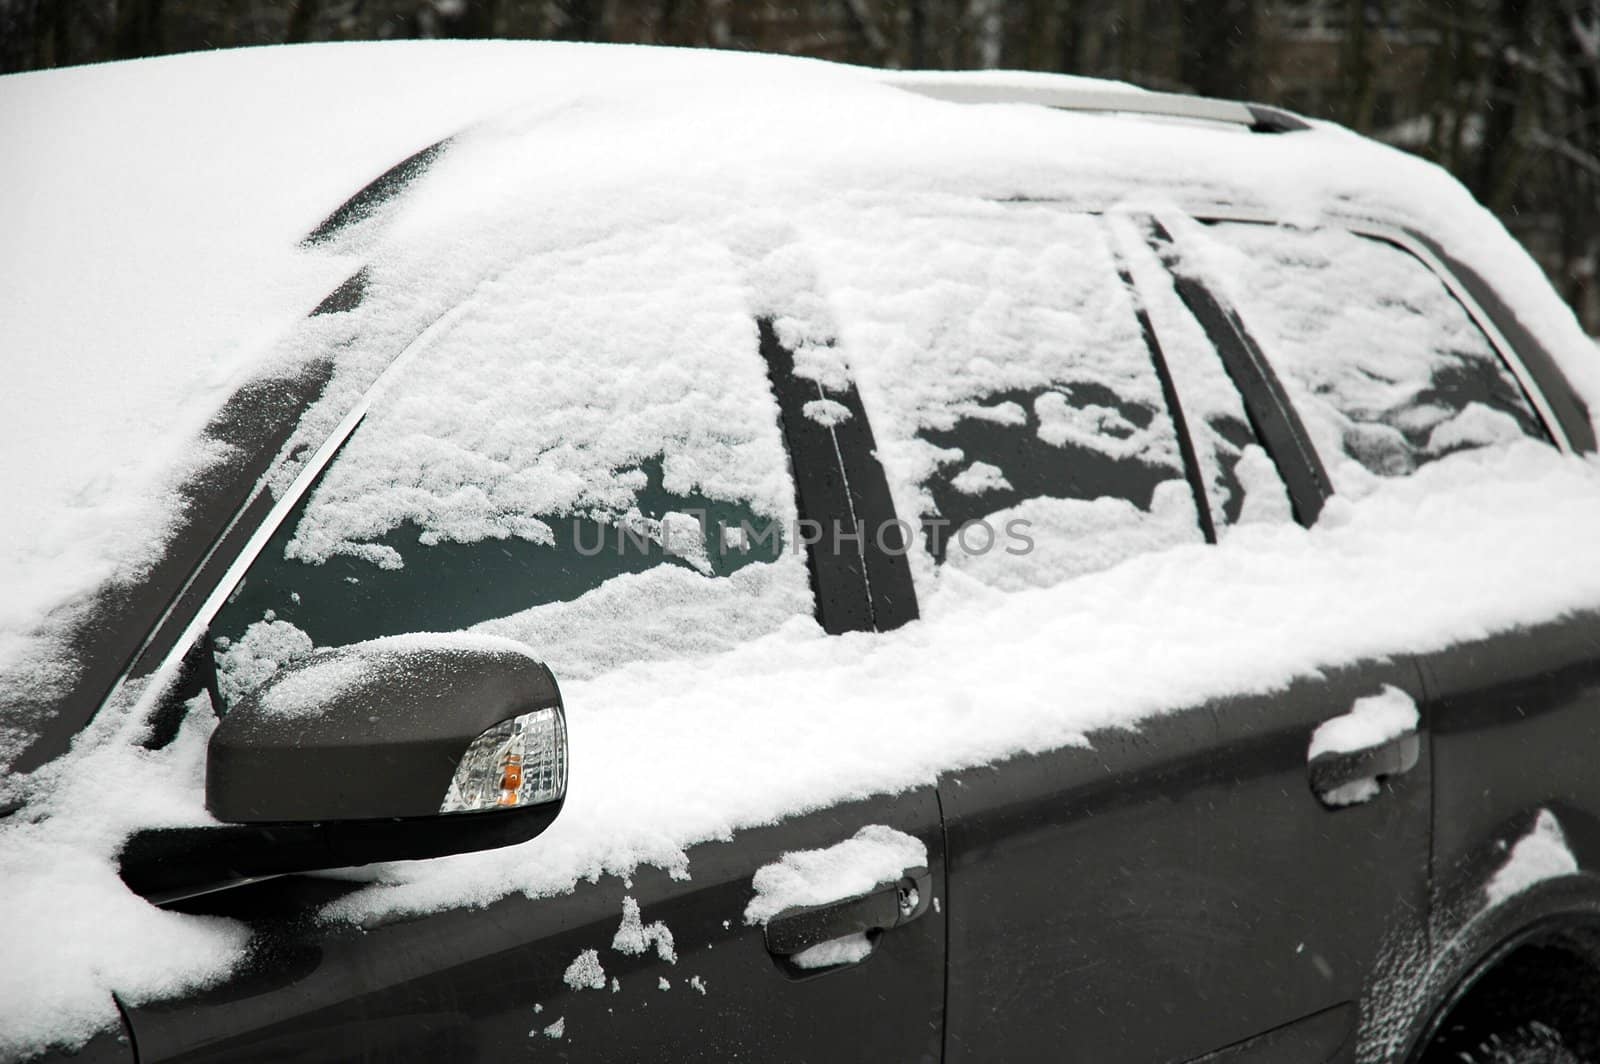 snowy car by lehnerda